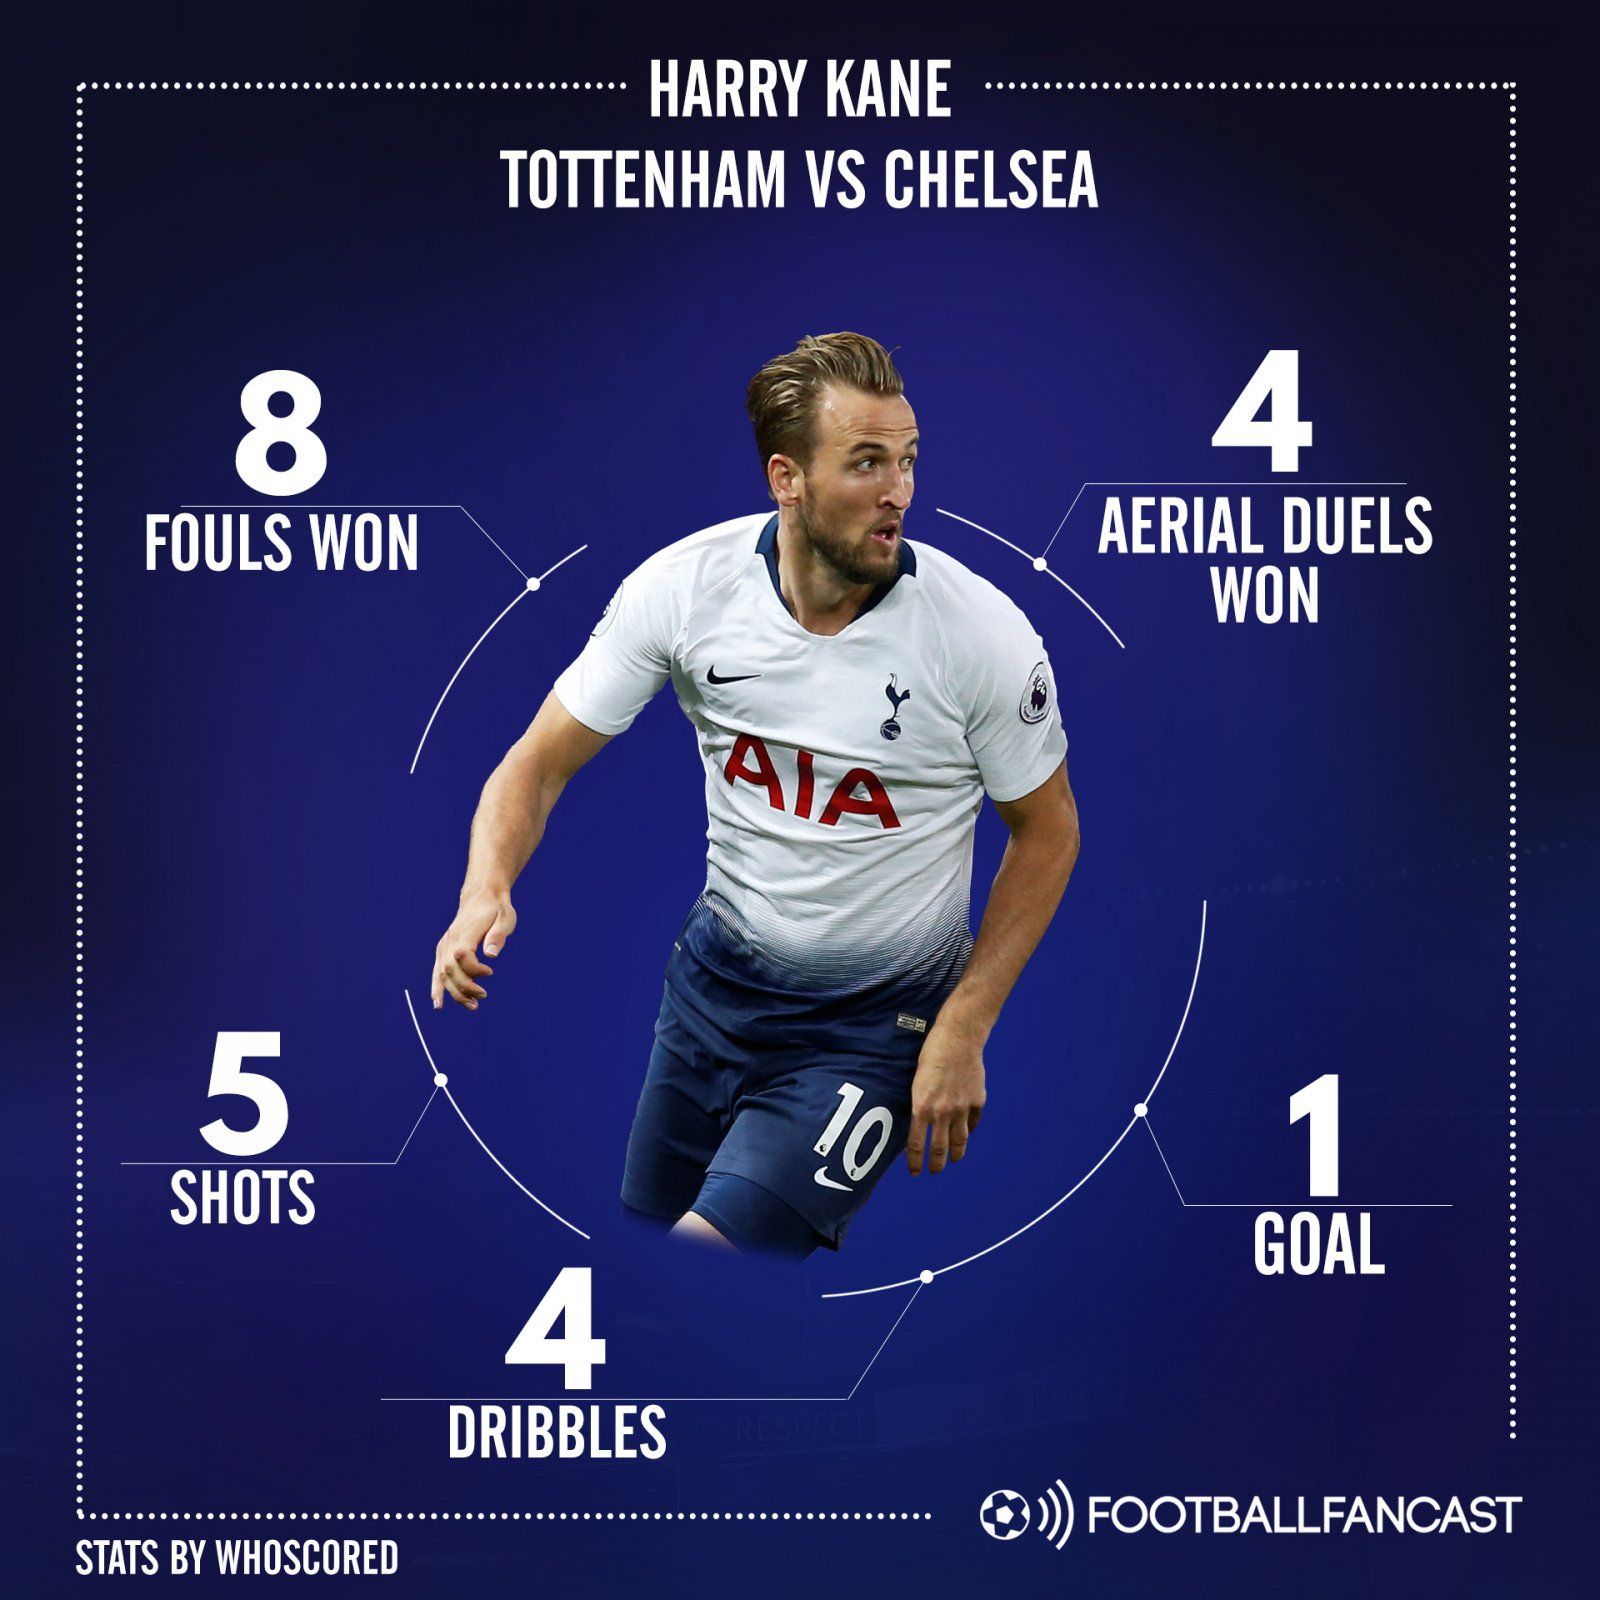 Harry Kane's stats vs Chelsea